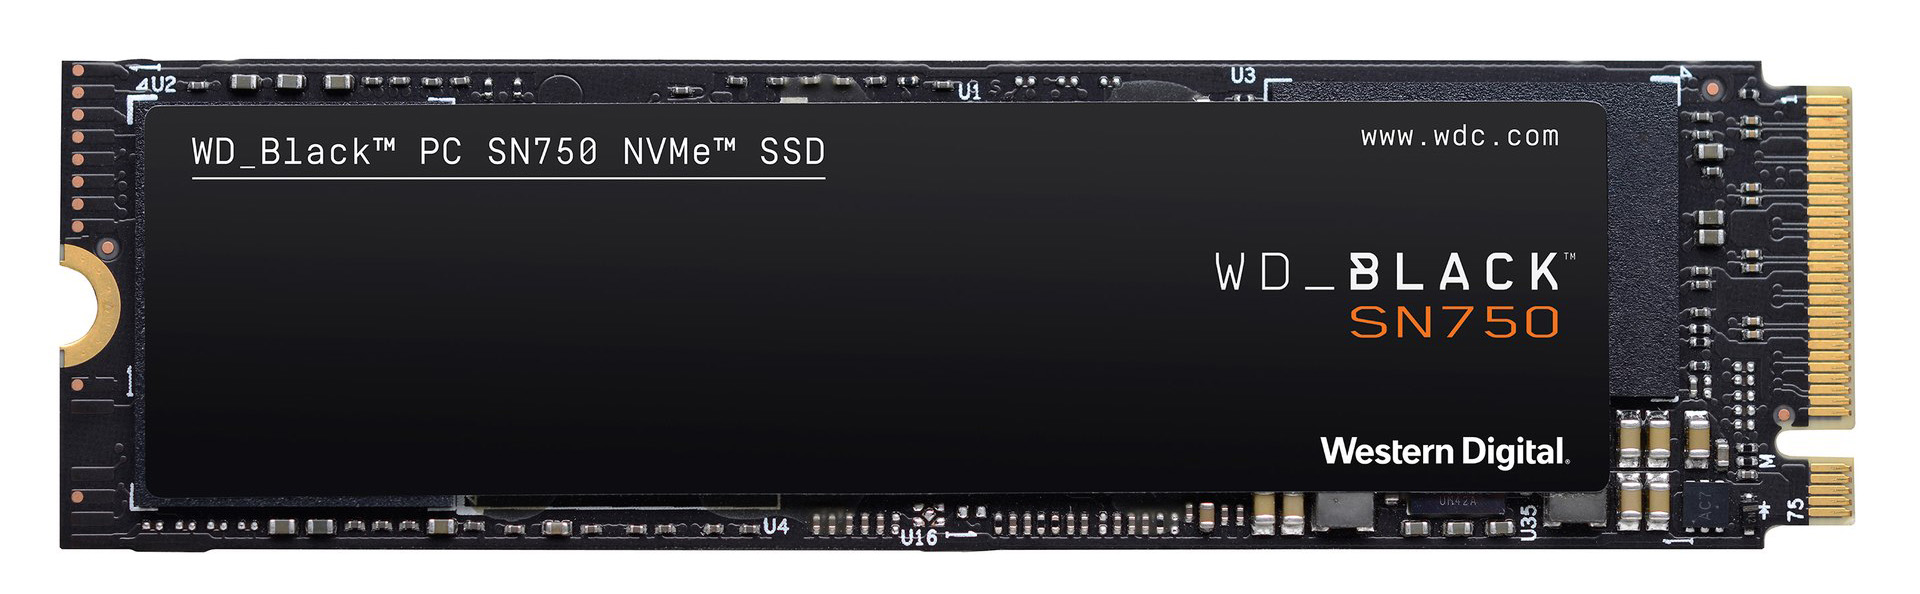 Review Wd Black Sn750 Nvme Ssd 1tb Storage Hexus Net